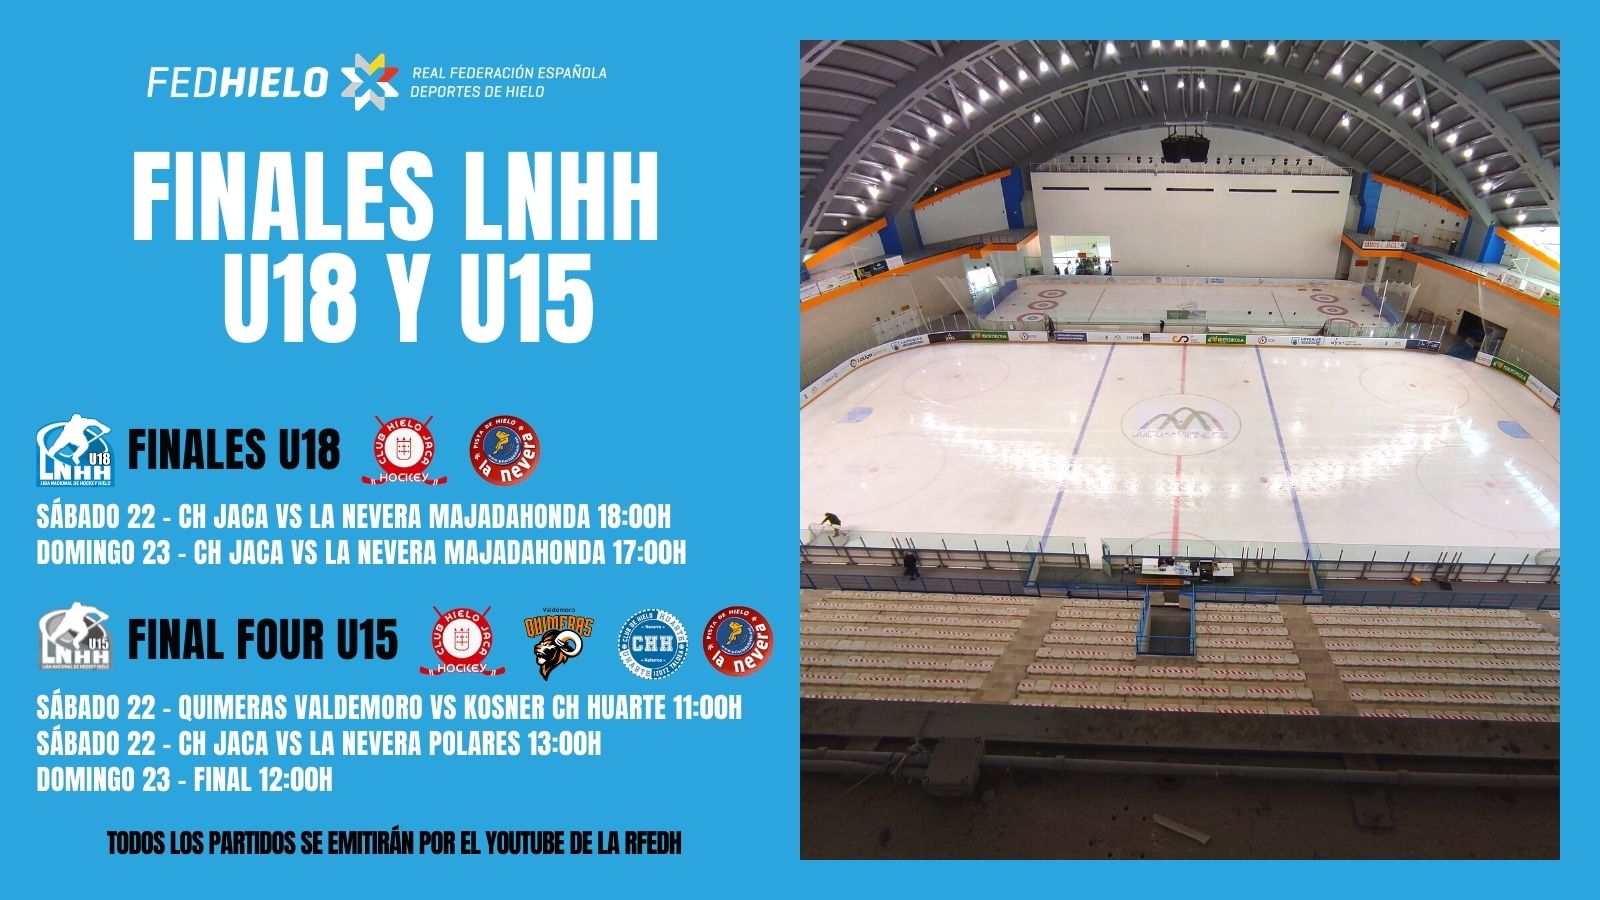 LNHH, ¿Cómo seguir las Finales de la LNHH U18 y U15?, Real Federación Española Deportes de Hielo